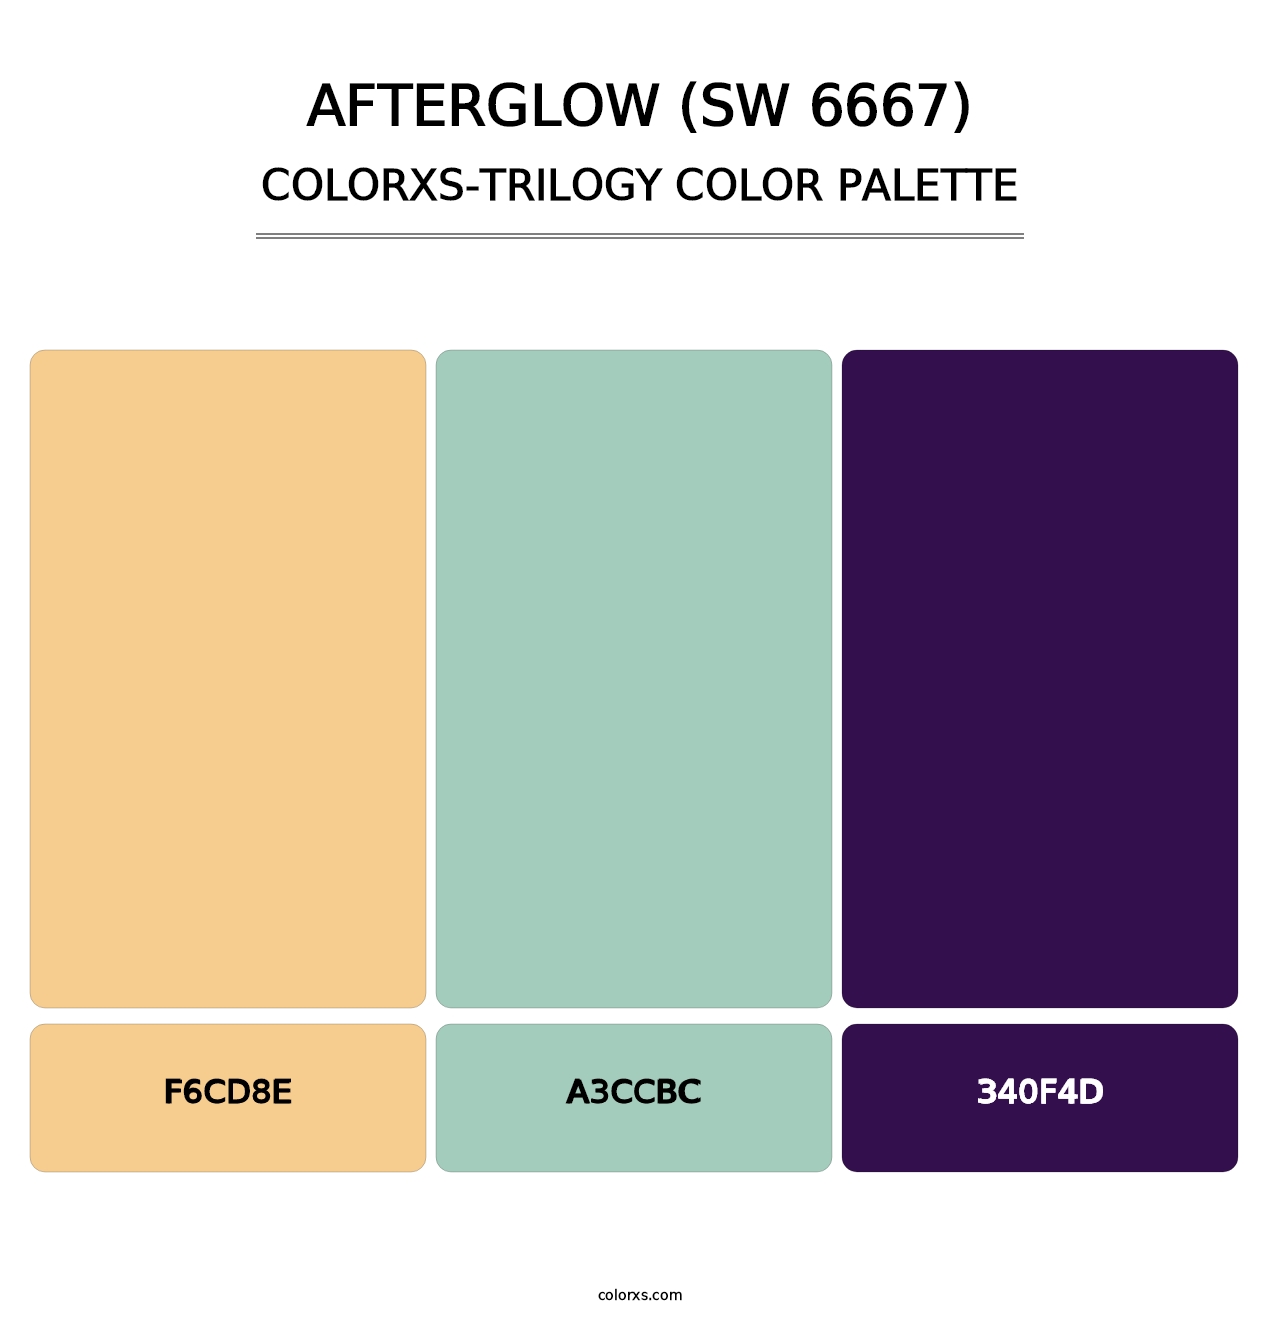 Afterglow (SW 6667) - Colorxs Trilogy Palette